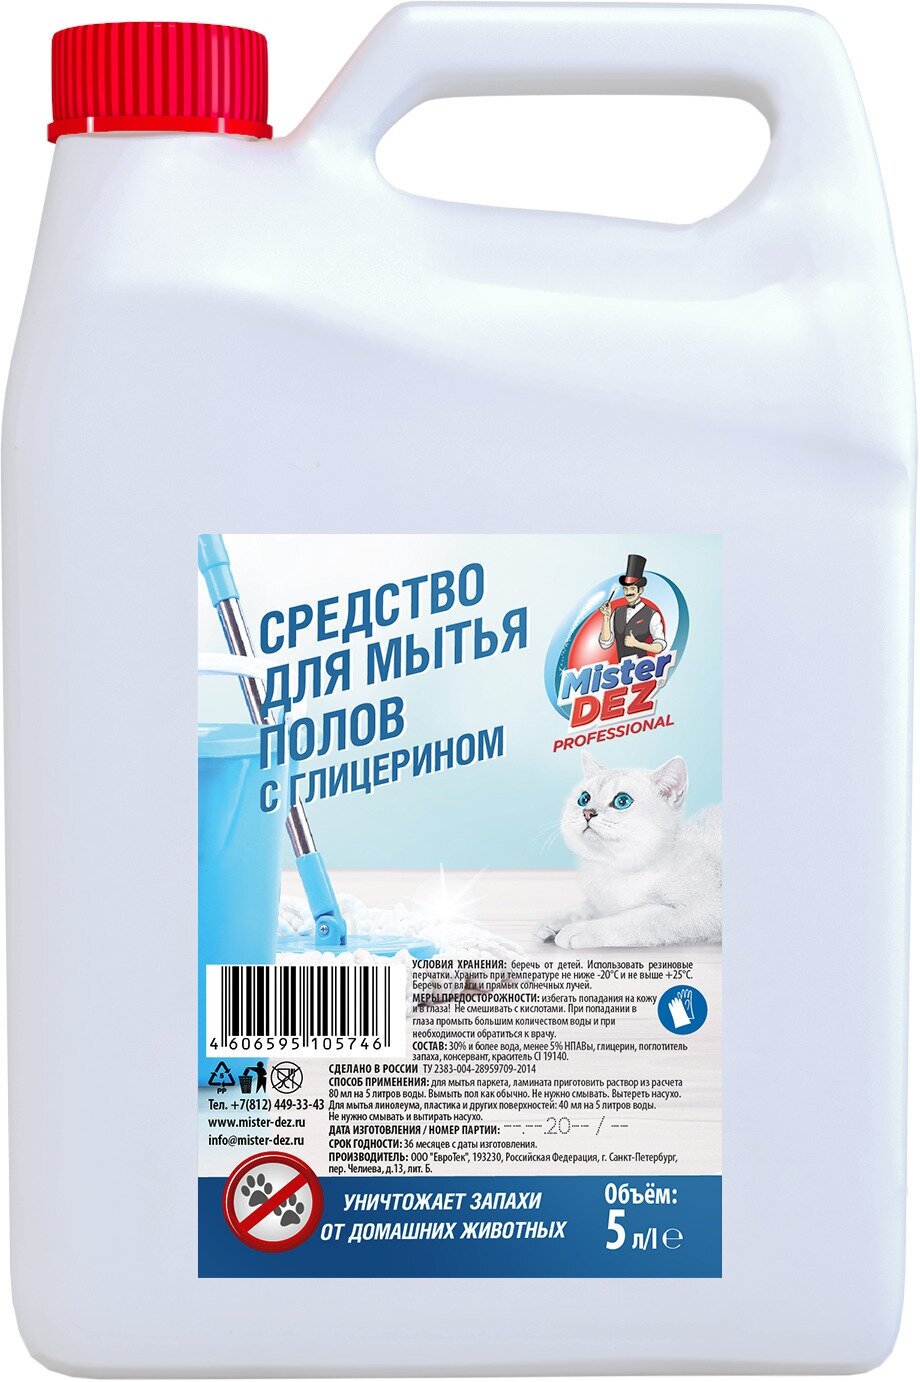 Средство для мытья пола Mister Dez PROFESSIONAL от запахов домашних животных, 5 л